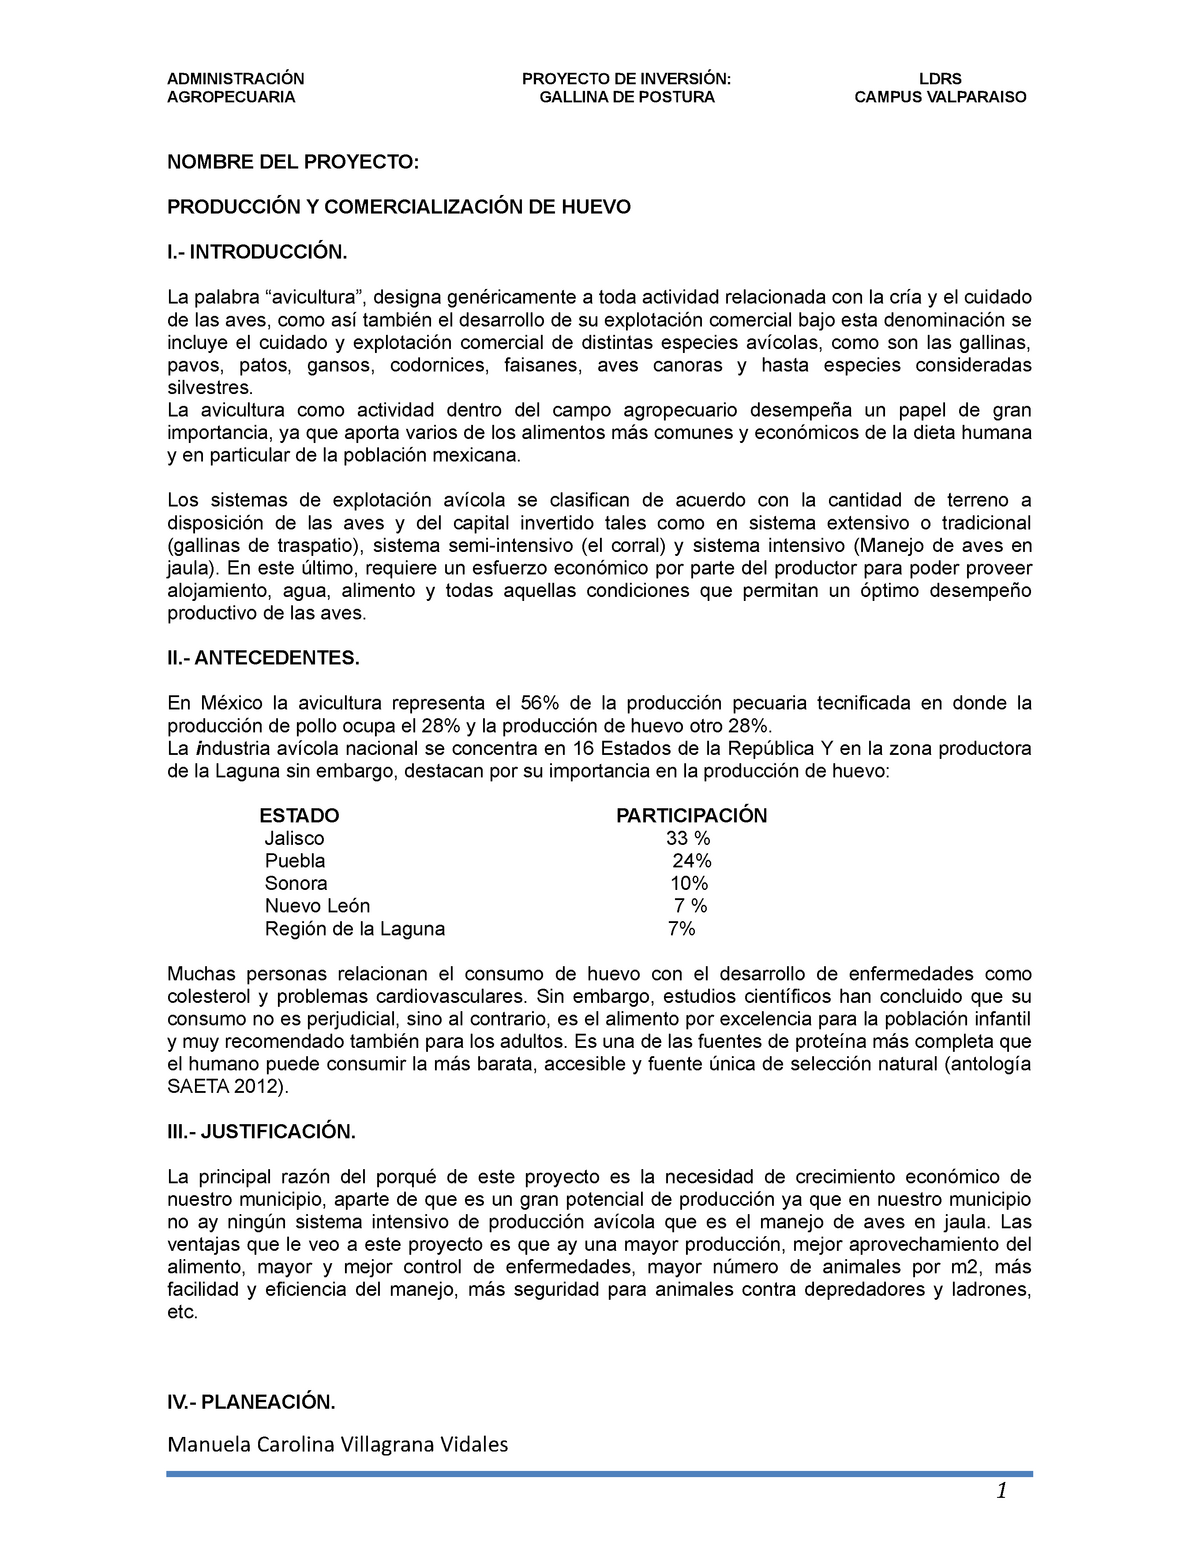 Proyecto Gallina DE Postura - ADMINISTRACIÓN AGROPECUARIA PROYECTO DE  INVERSIÓN: GALLINA DE POSTURA - Studocu